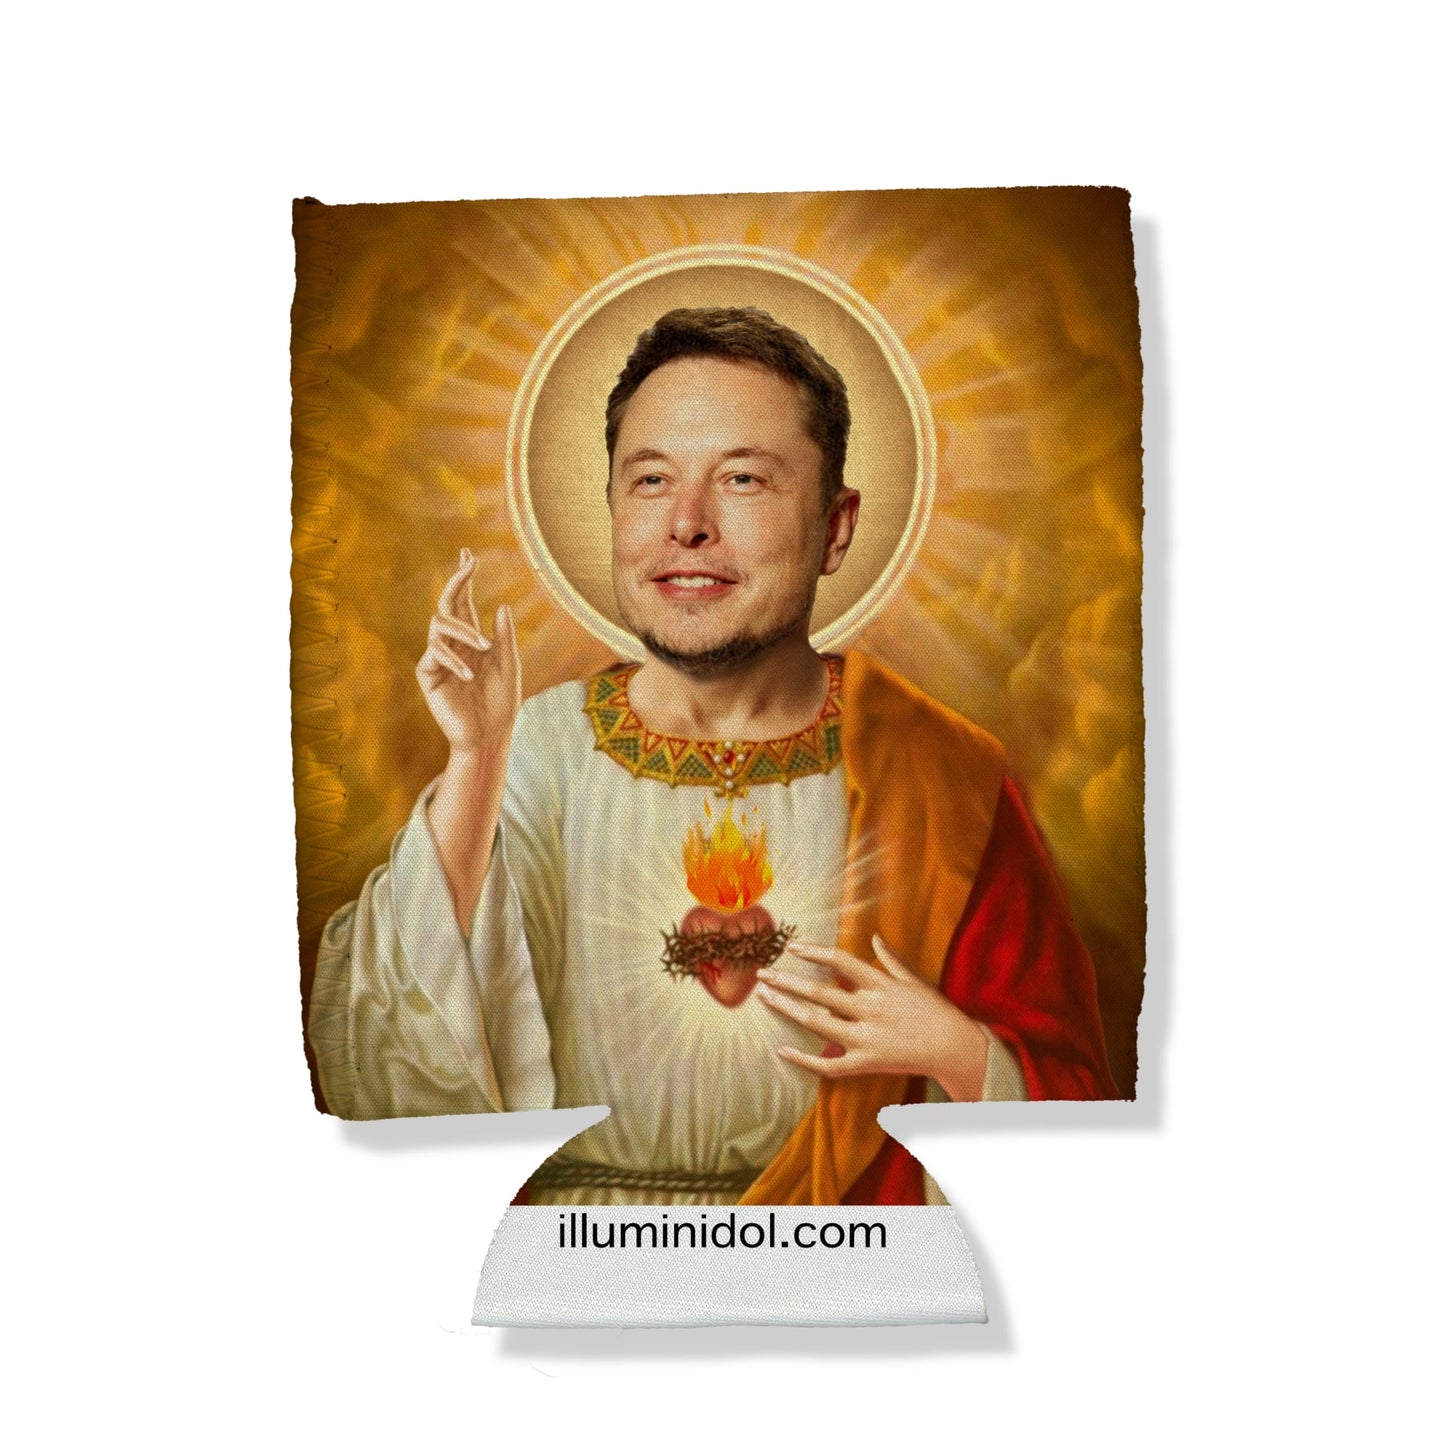 Elon Musk Can Hugger